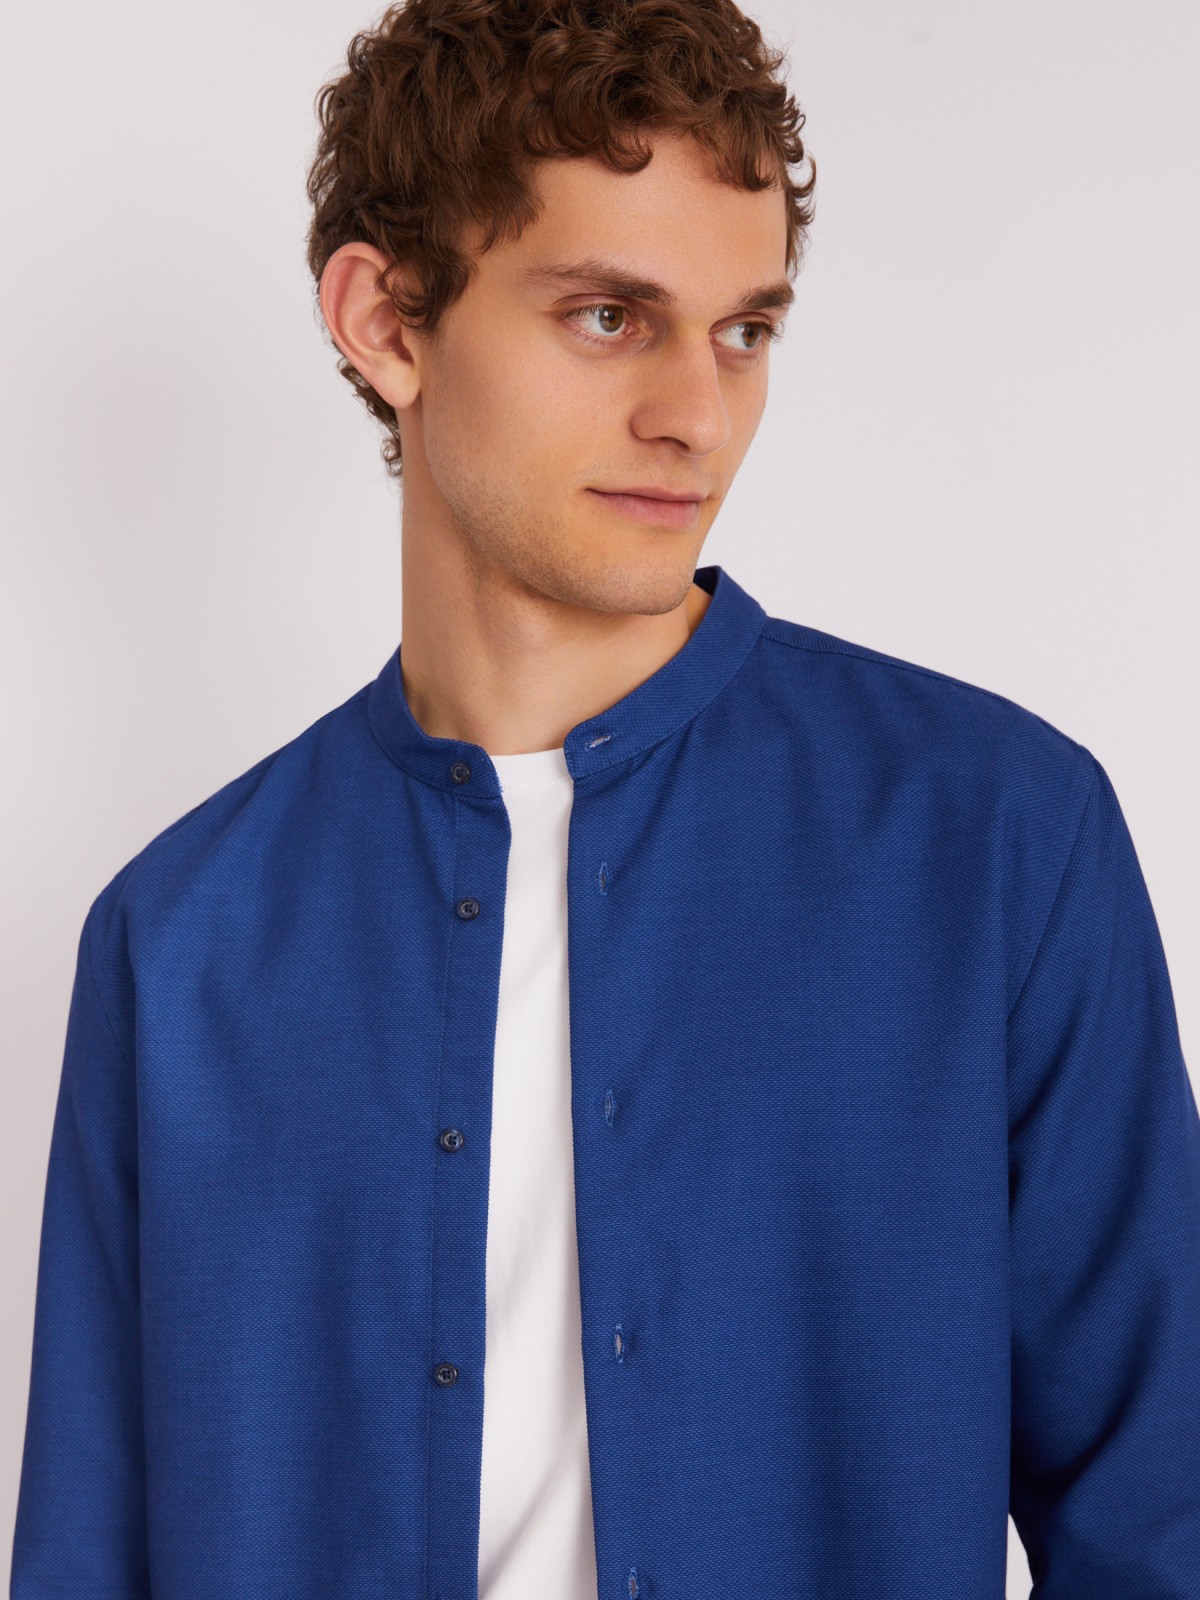 Офисная рубашка с воротником-стойкой и длинным рукавом zolla 013312159023, цвет голубой, размер M - фото 4